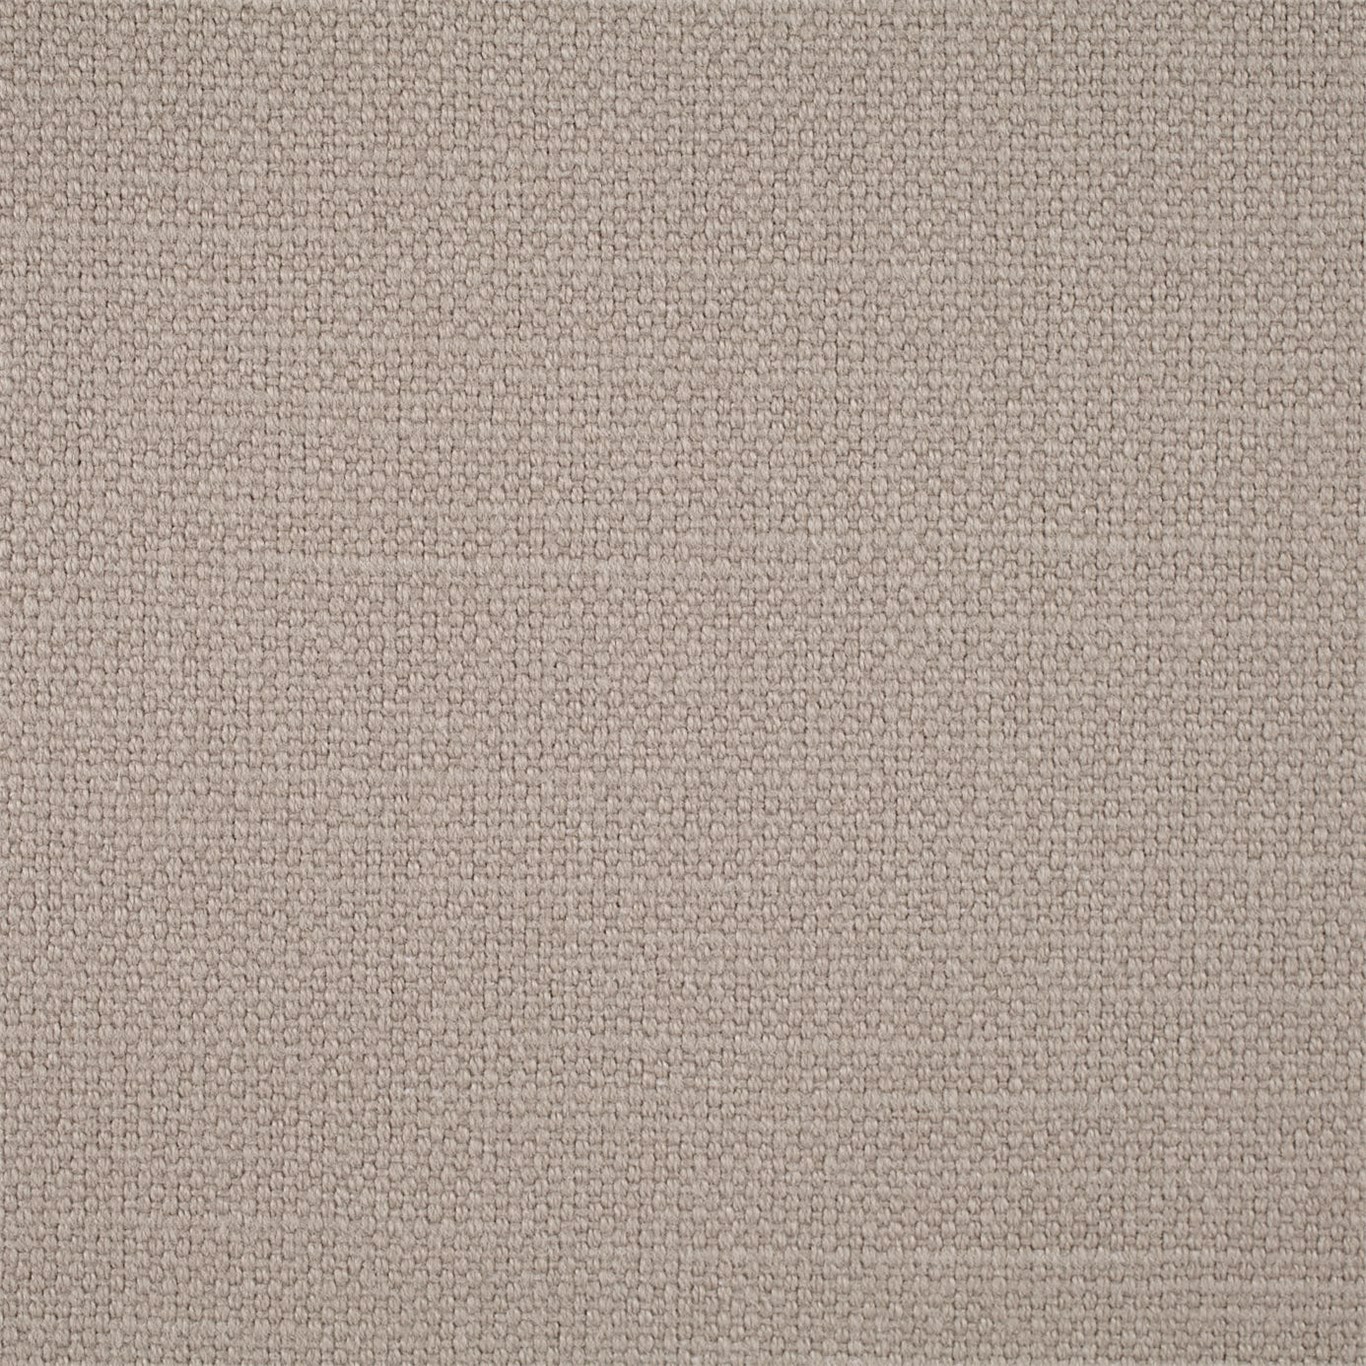 Arley Limestone Fabric by SAN